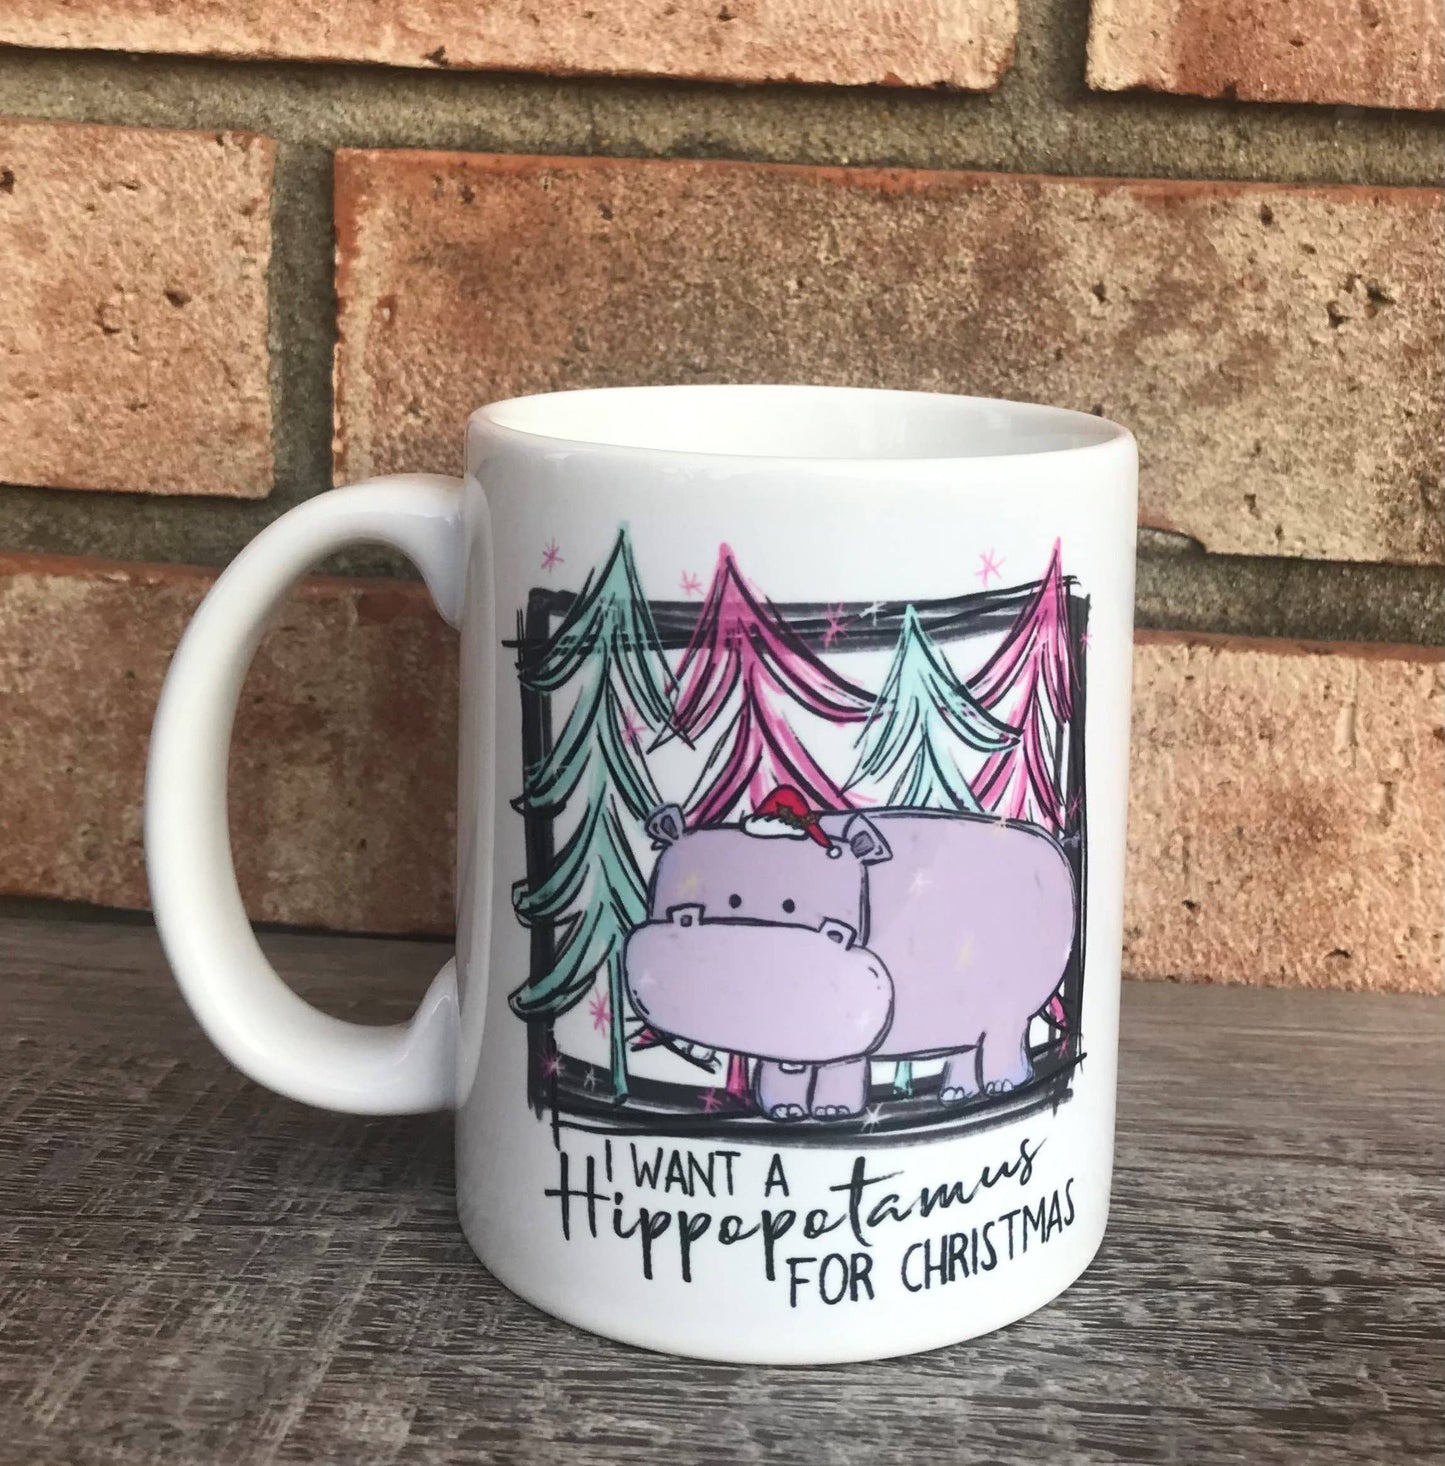 Hippo for Christmas mug